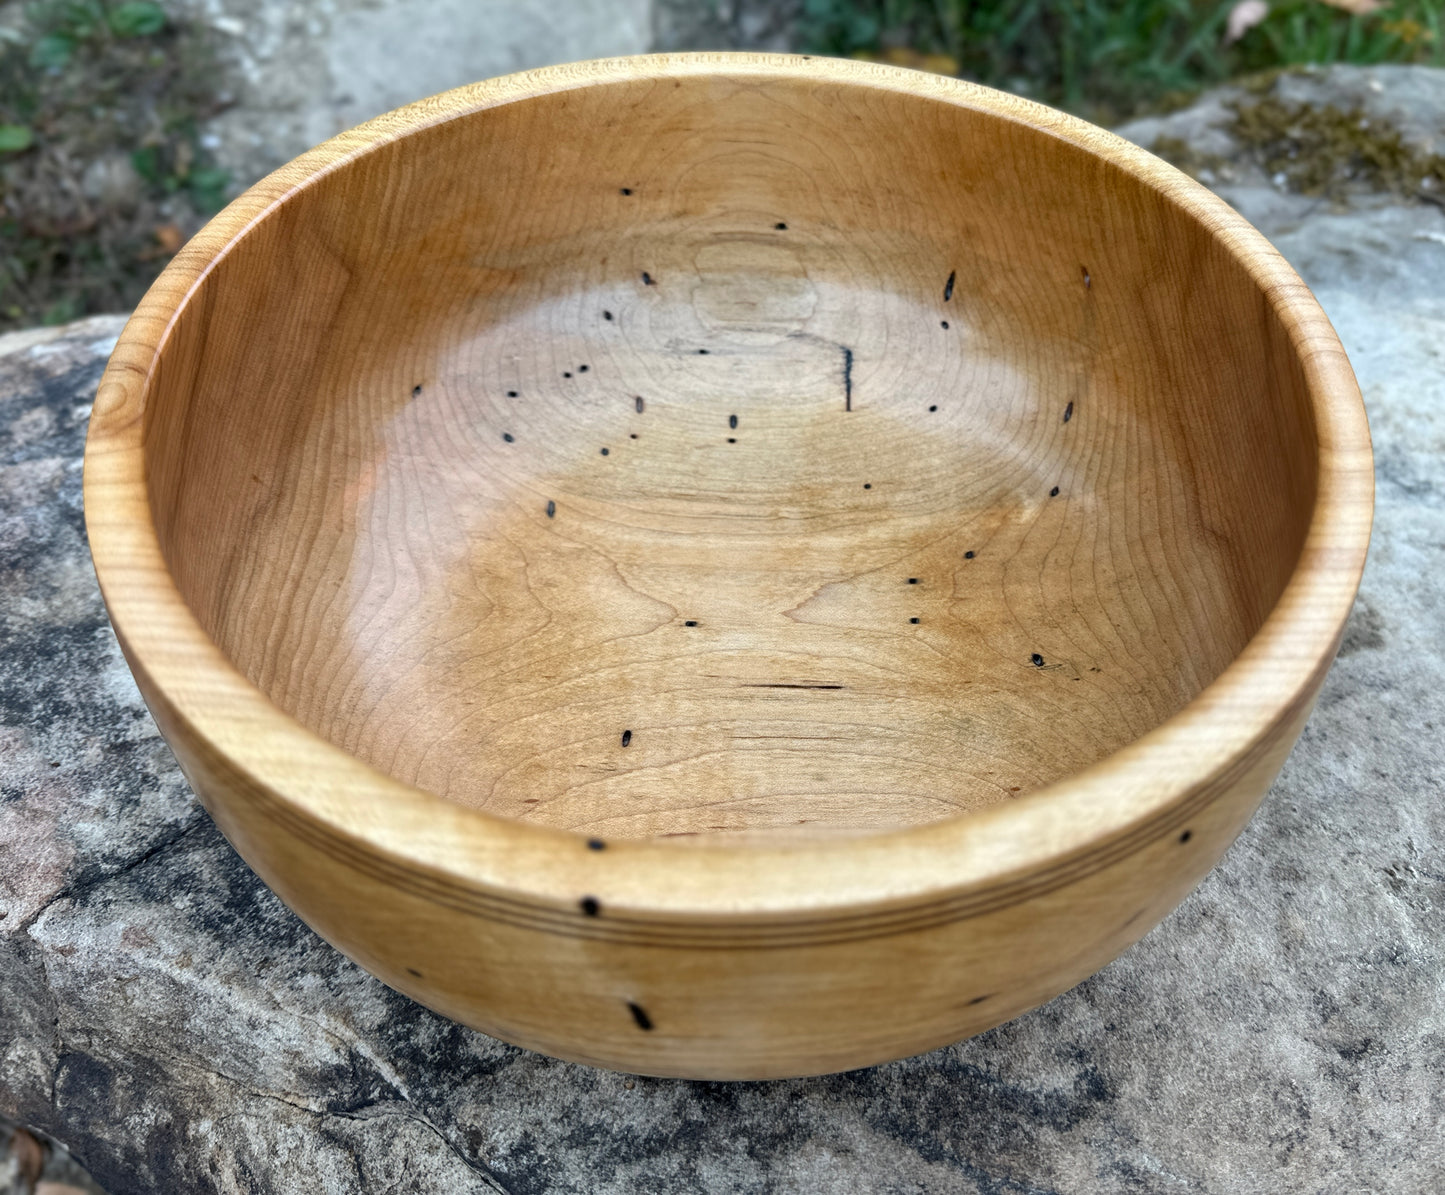 Sugar Maple - Medium (10 3/4 inch) Bowl